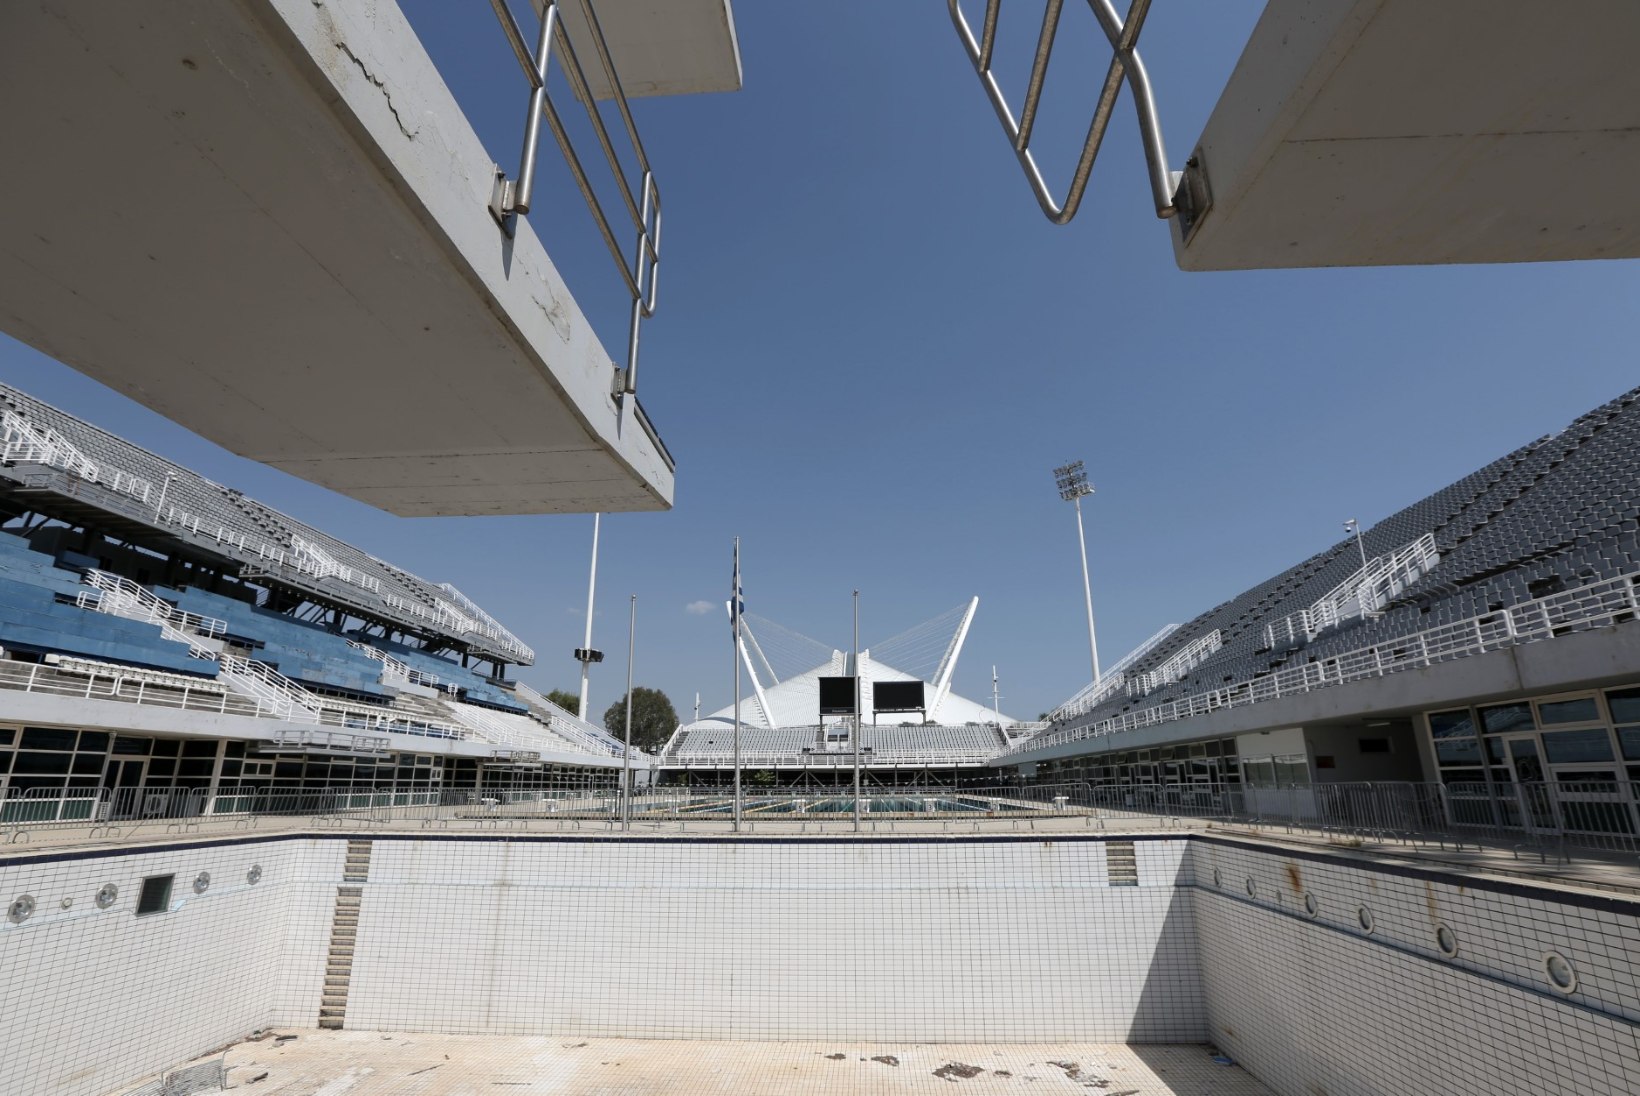 FOTOD: Ateena olümpiarajatistest on saanud kümne aastaga kõledad tondilossid